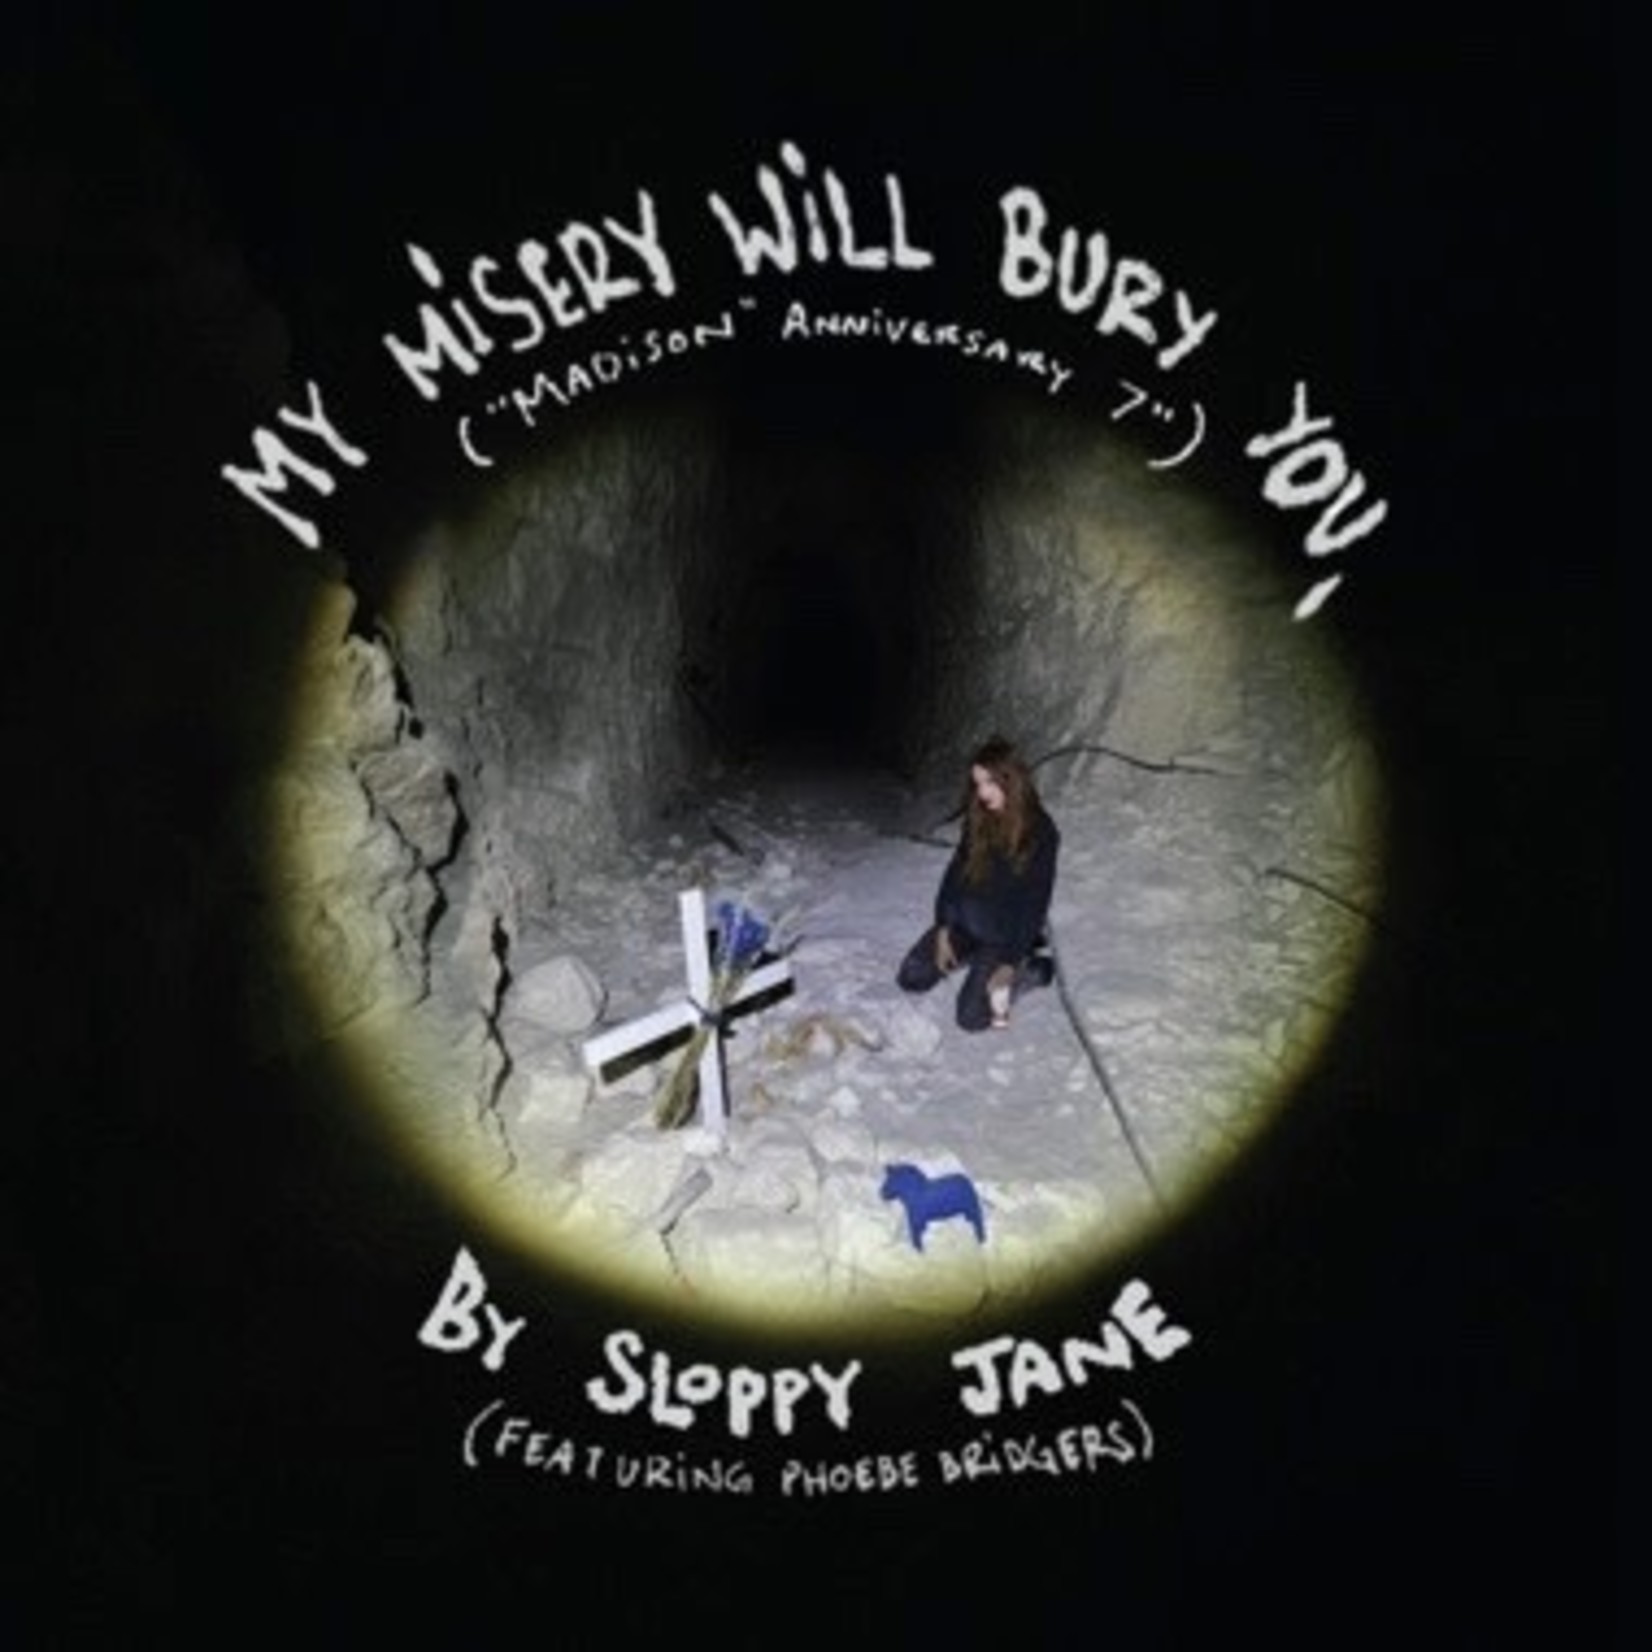 Saddest Factory Sloppy Jane & Phoebe Bridgers - My Misery Will Bury You (7")